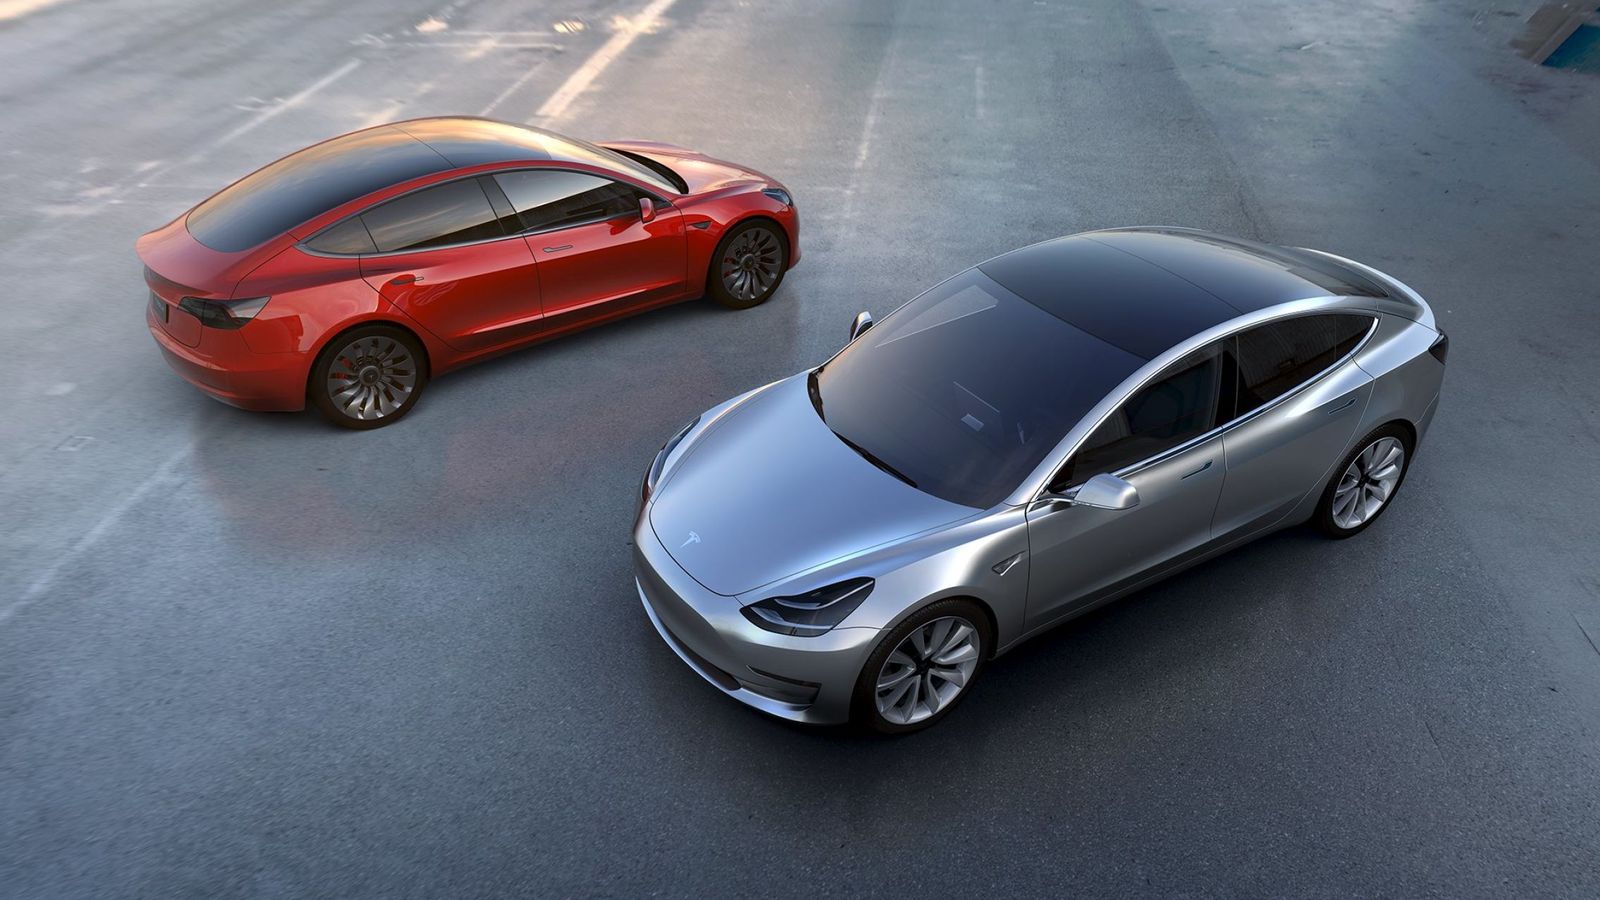 Foto: Tesla ha presentado el Model 3, que llegará a las tiendas a finales de 2017. (Tesla)